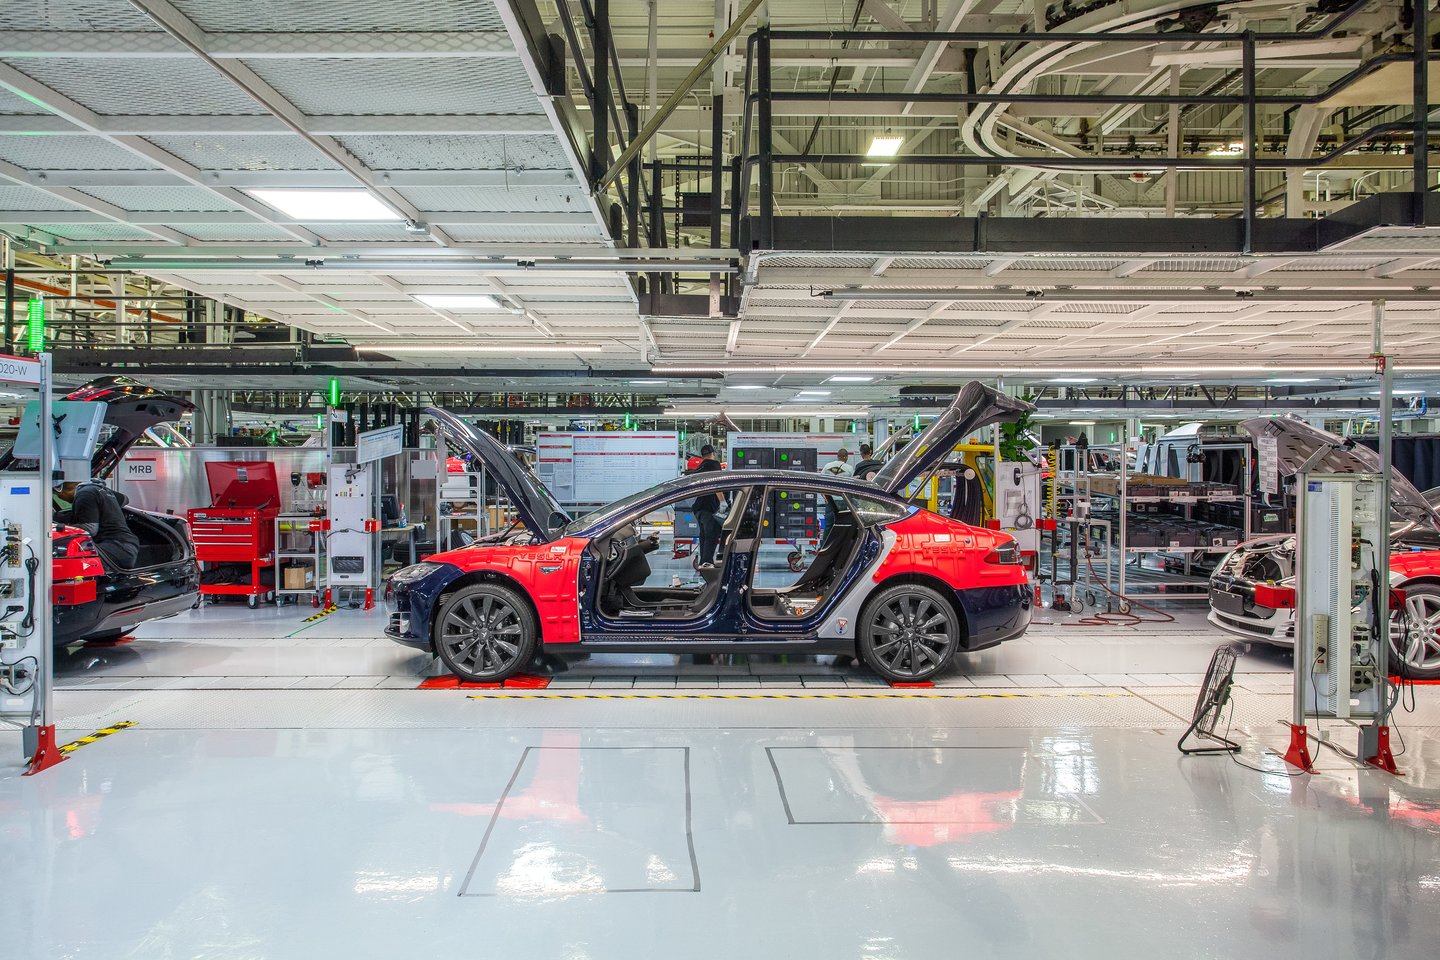  „Tesla“ gali tekti greitai padidinti gamybos apimtis, o „General Motors“ apleisti pastatai – galimas sprendimas.<br> Gamintojo nuotr.